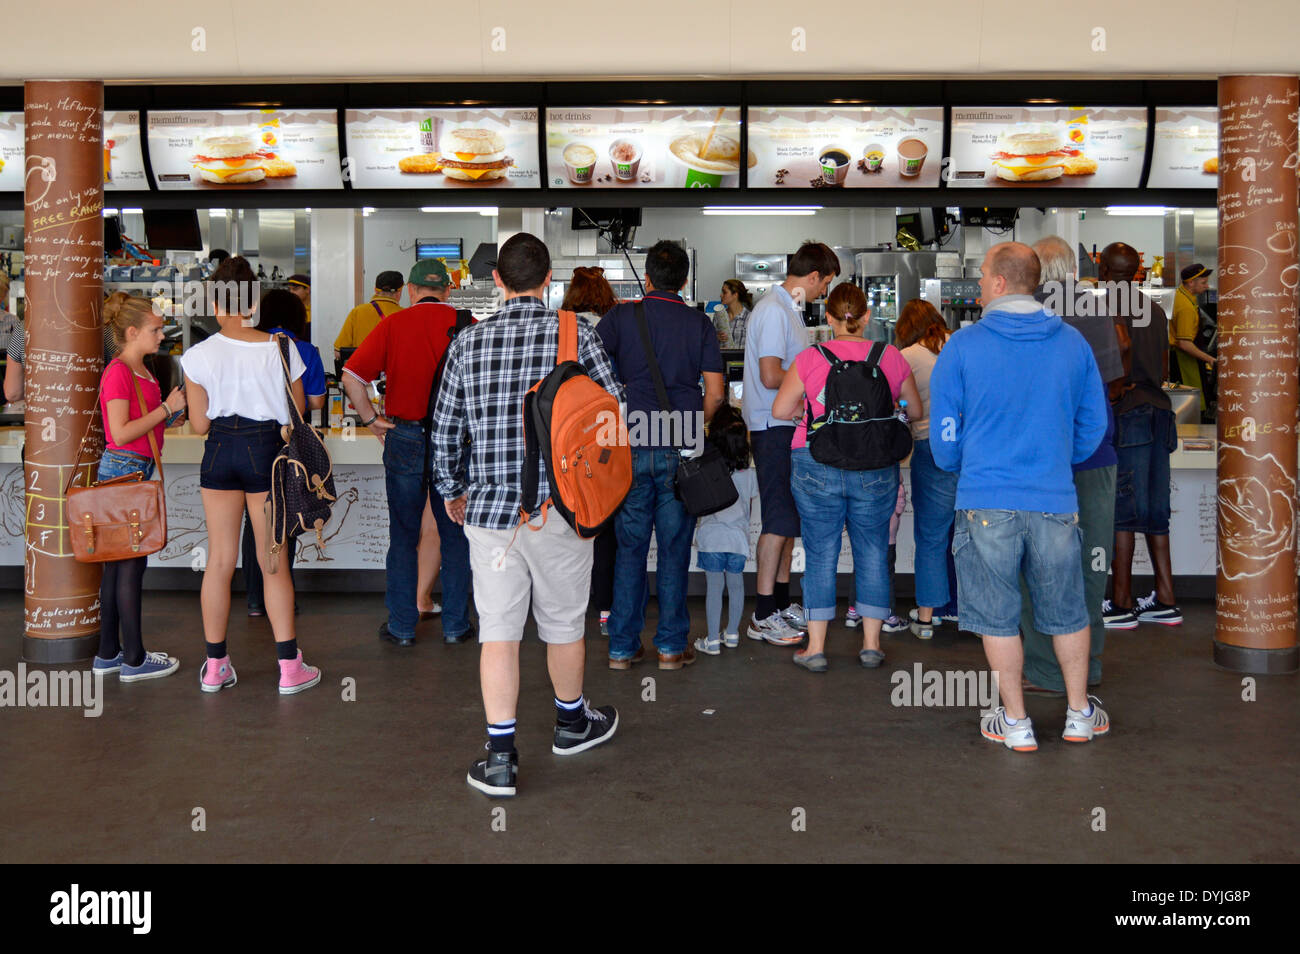 Rückansicht des McDonalds Fast-Food-Restaurants. Die Gäste warten am Schalter, um in London 2012 Olympic Park Stratford Newham London England serviert zu werden Stockfoto